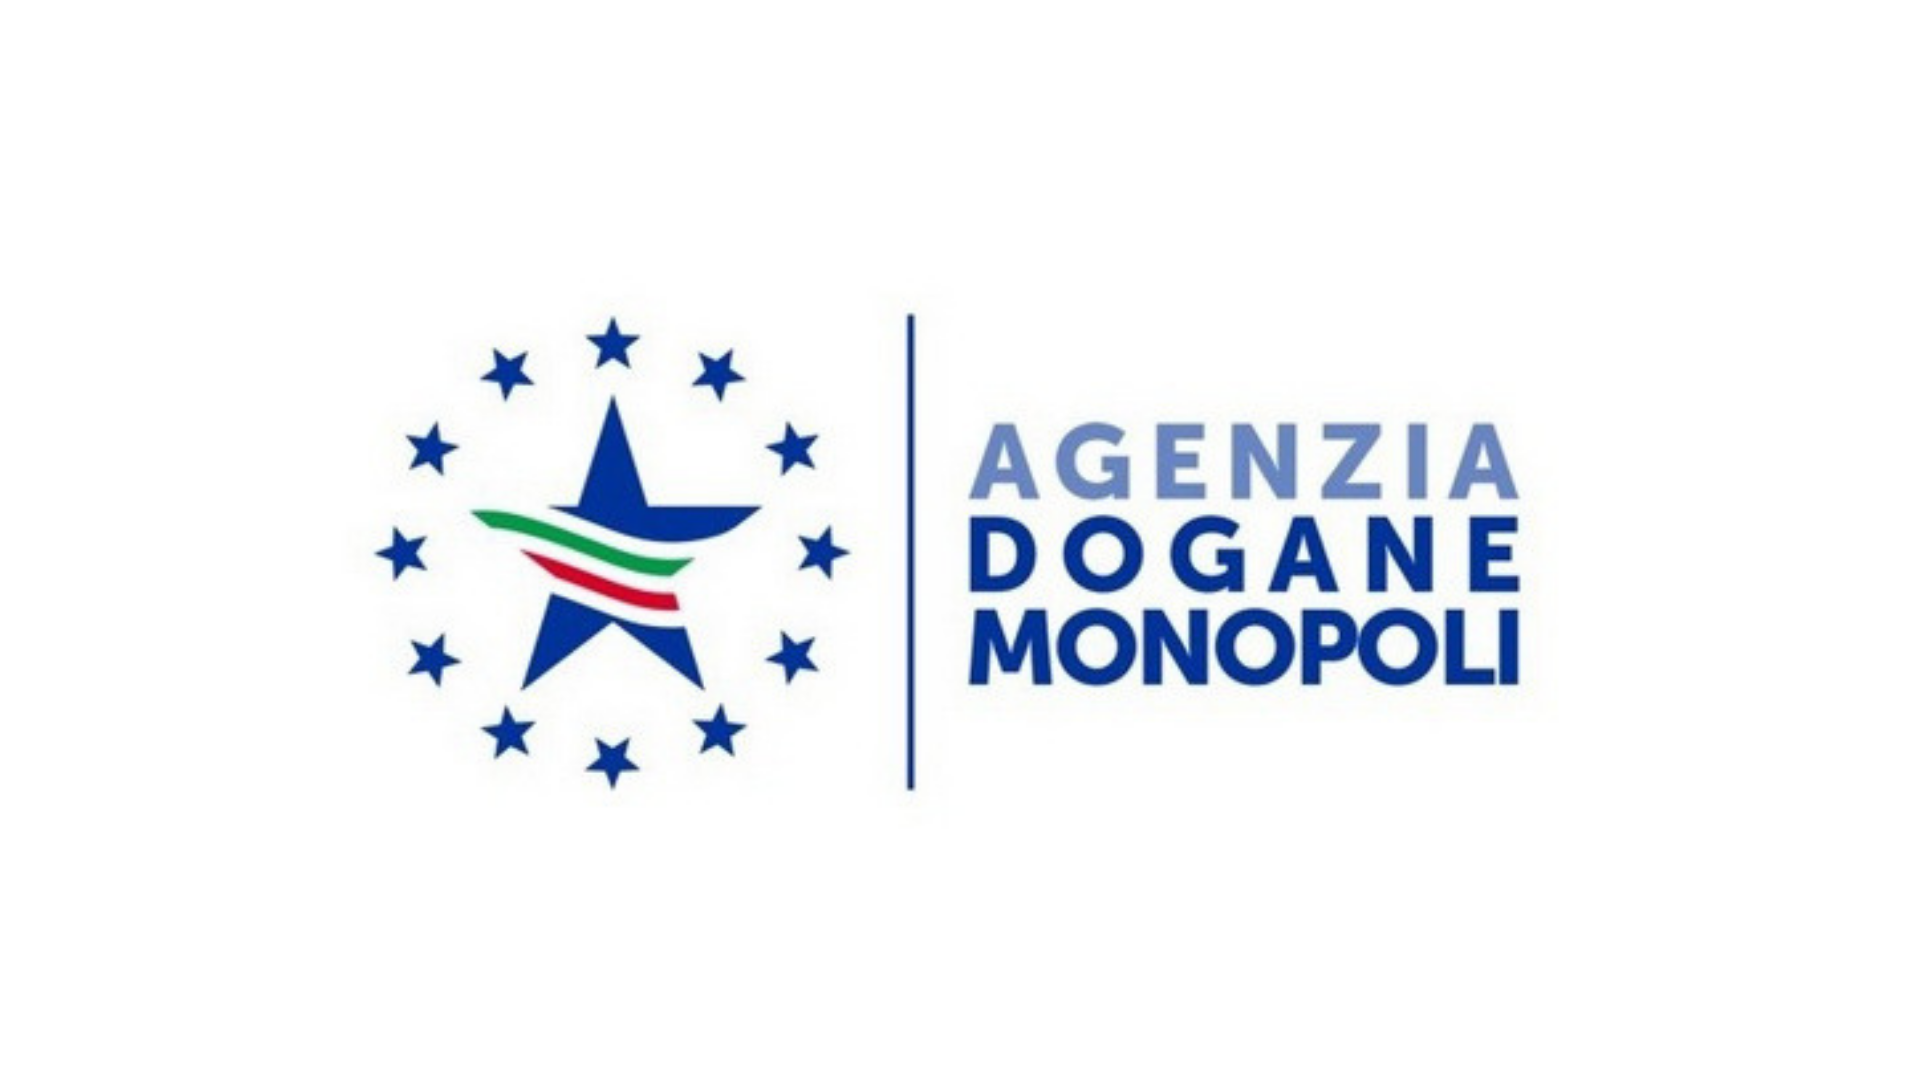 Agenzia Dogane e Monopoli v14